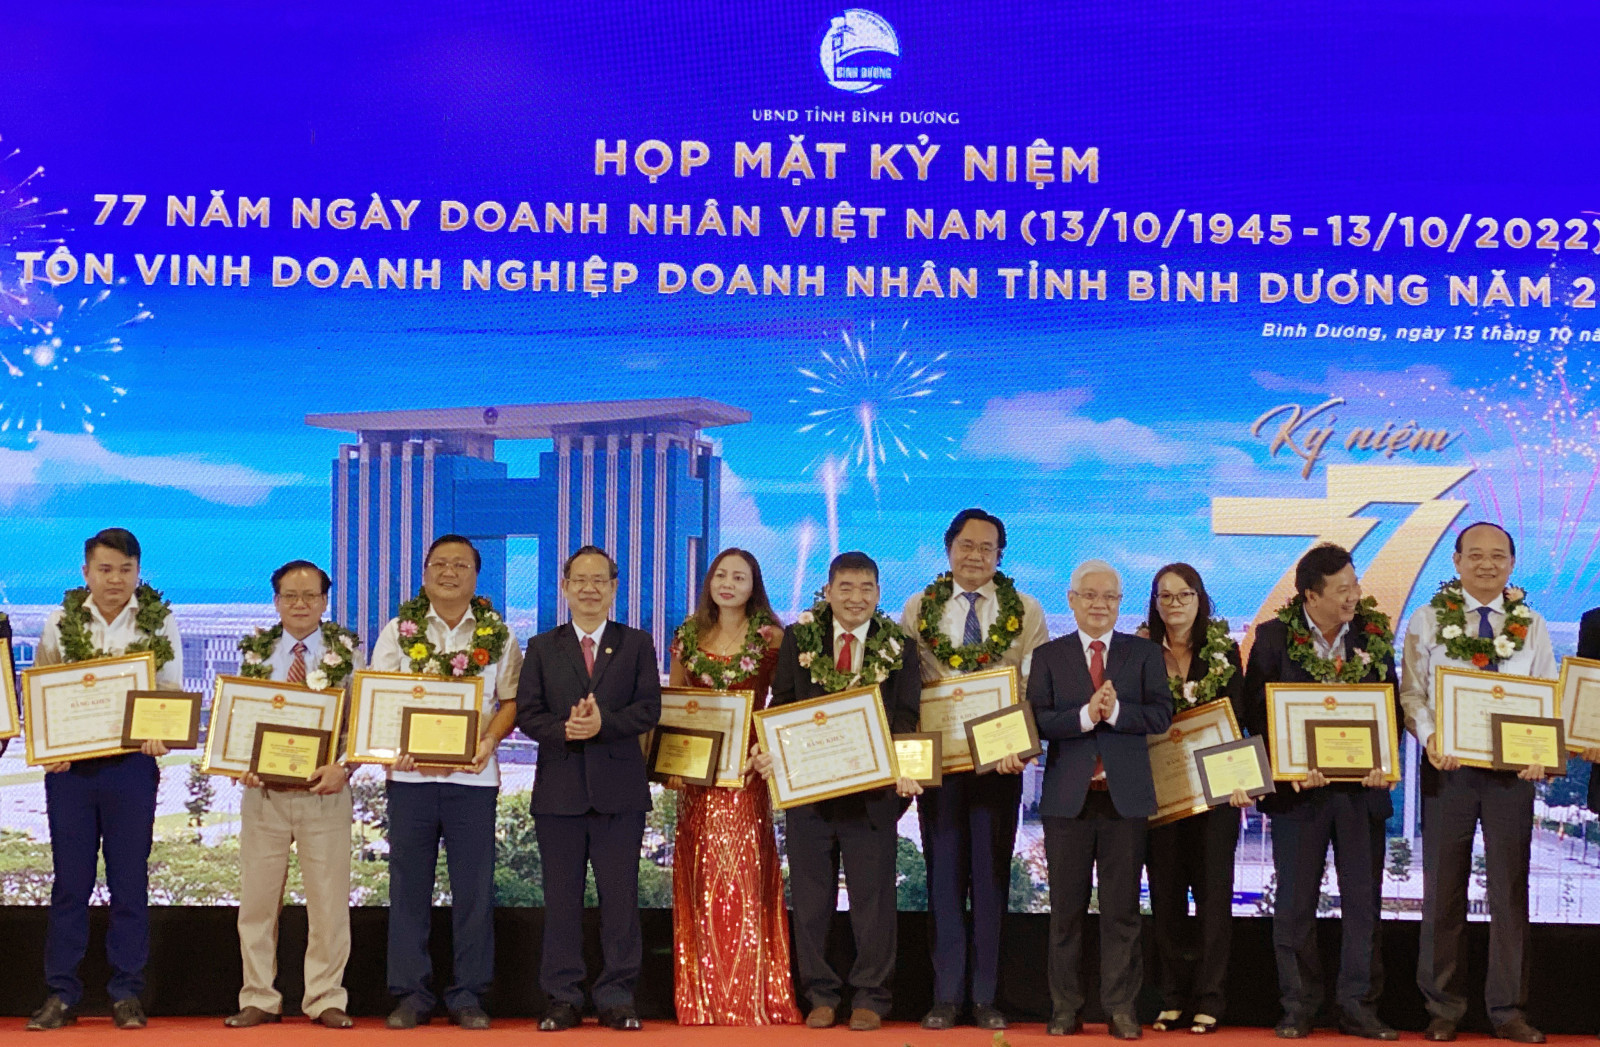 Bí thư Tỉnh ủy Nguyễn Văn Lợi trao bằng khen cho các tập thể có thành tích trong sản xuất, kinh doanh và đóng góp vào sự phát triển của địa phương (Ảnh: T.My).